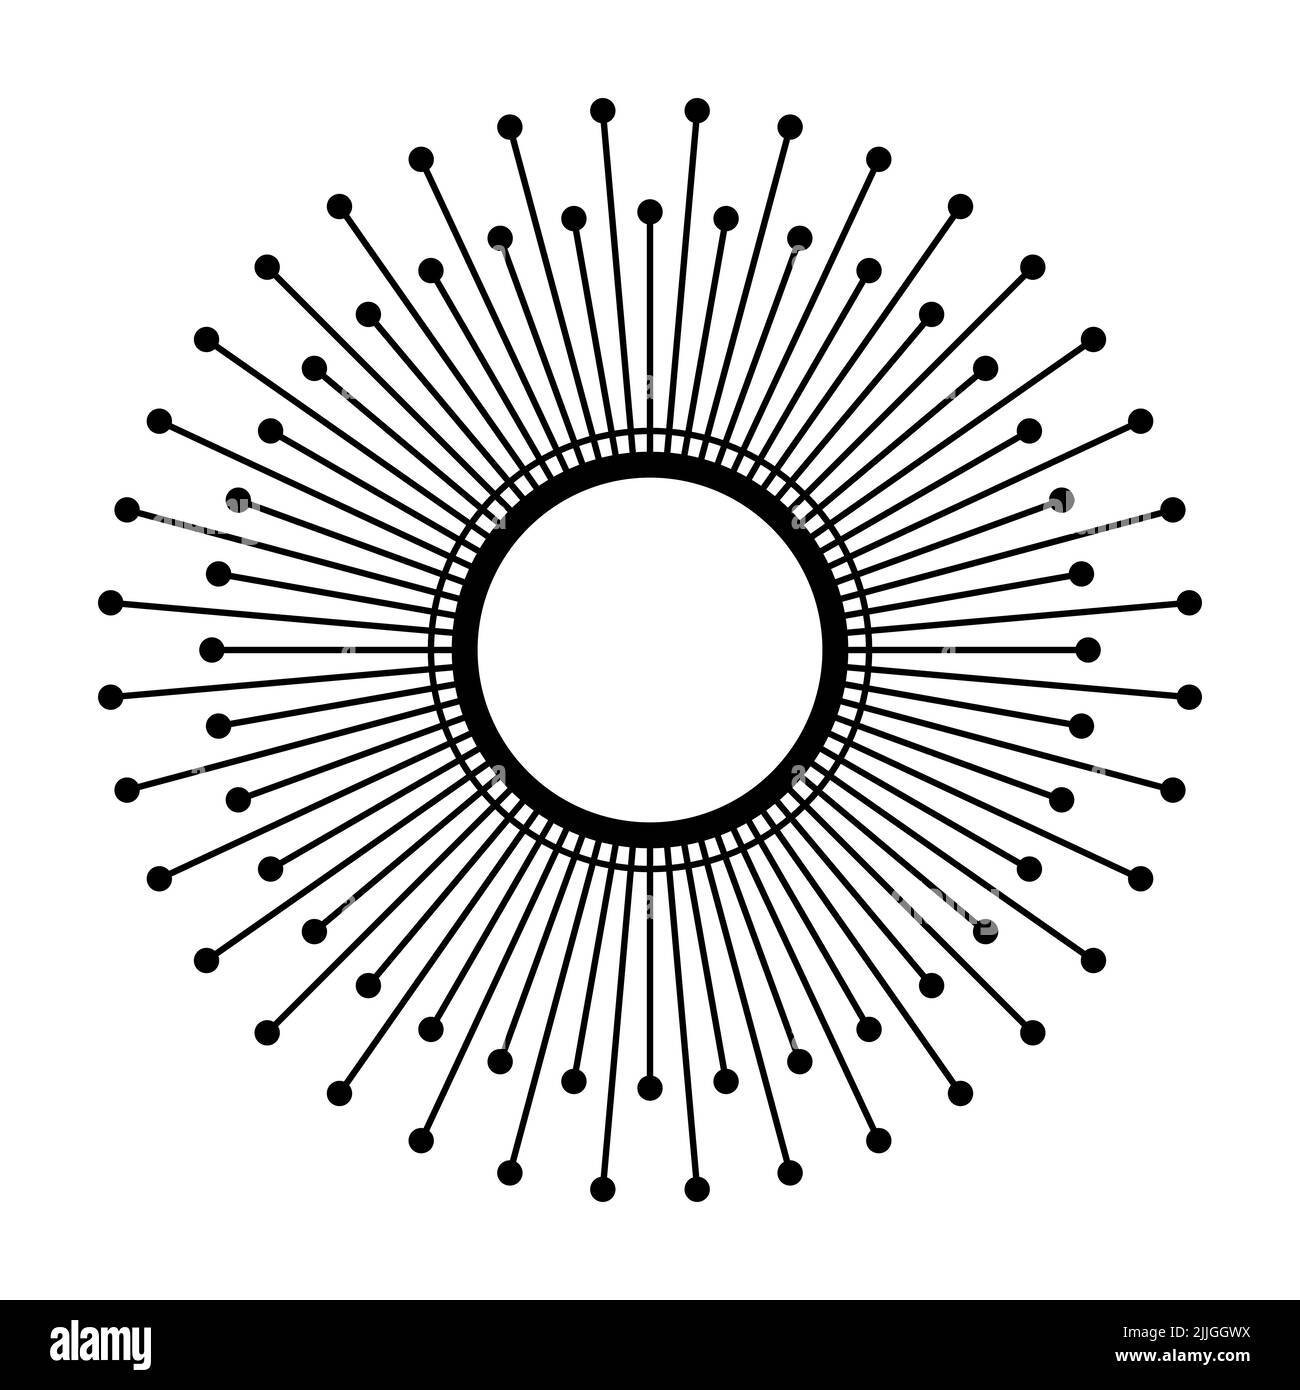 Simbolo del sole. Disco solare con 72, sei volte dodici, raggi di luce, con punti su ogni estremità. Le variazioni del segno sono usate per un mostro solare. Foto Stock